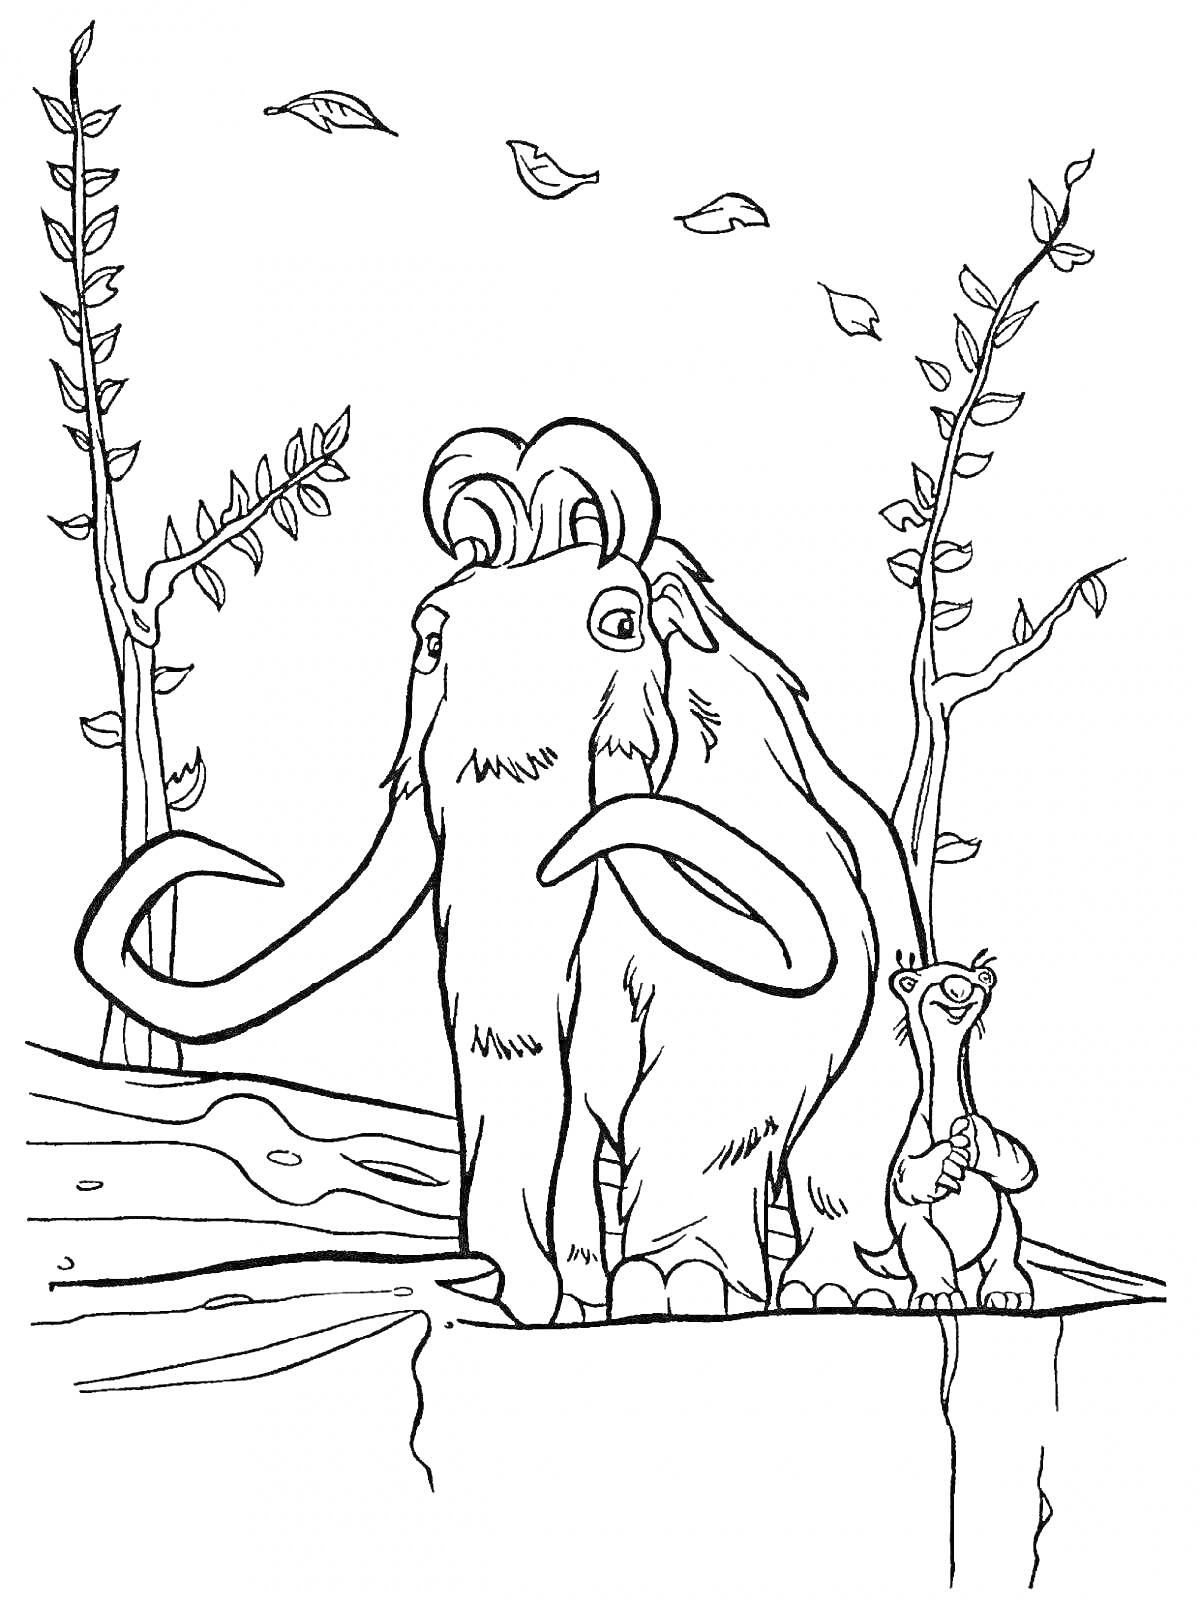 Раскраска Мамонт и ленивец на ледяной скале, деревья с листьями и падающие листья